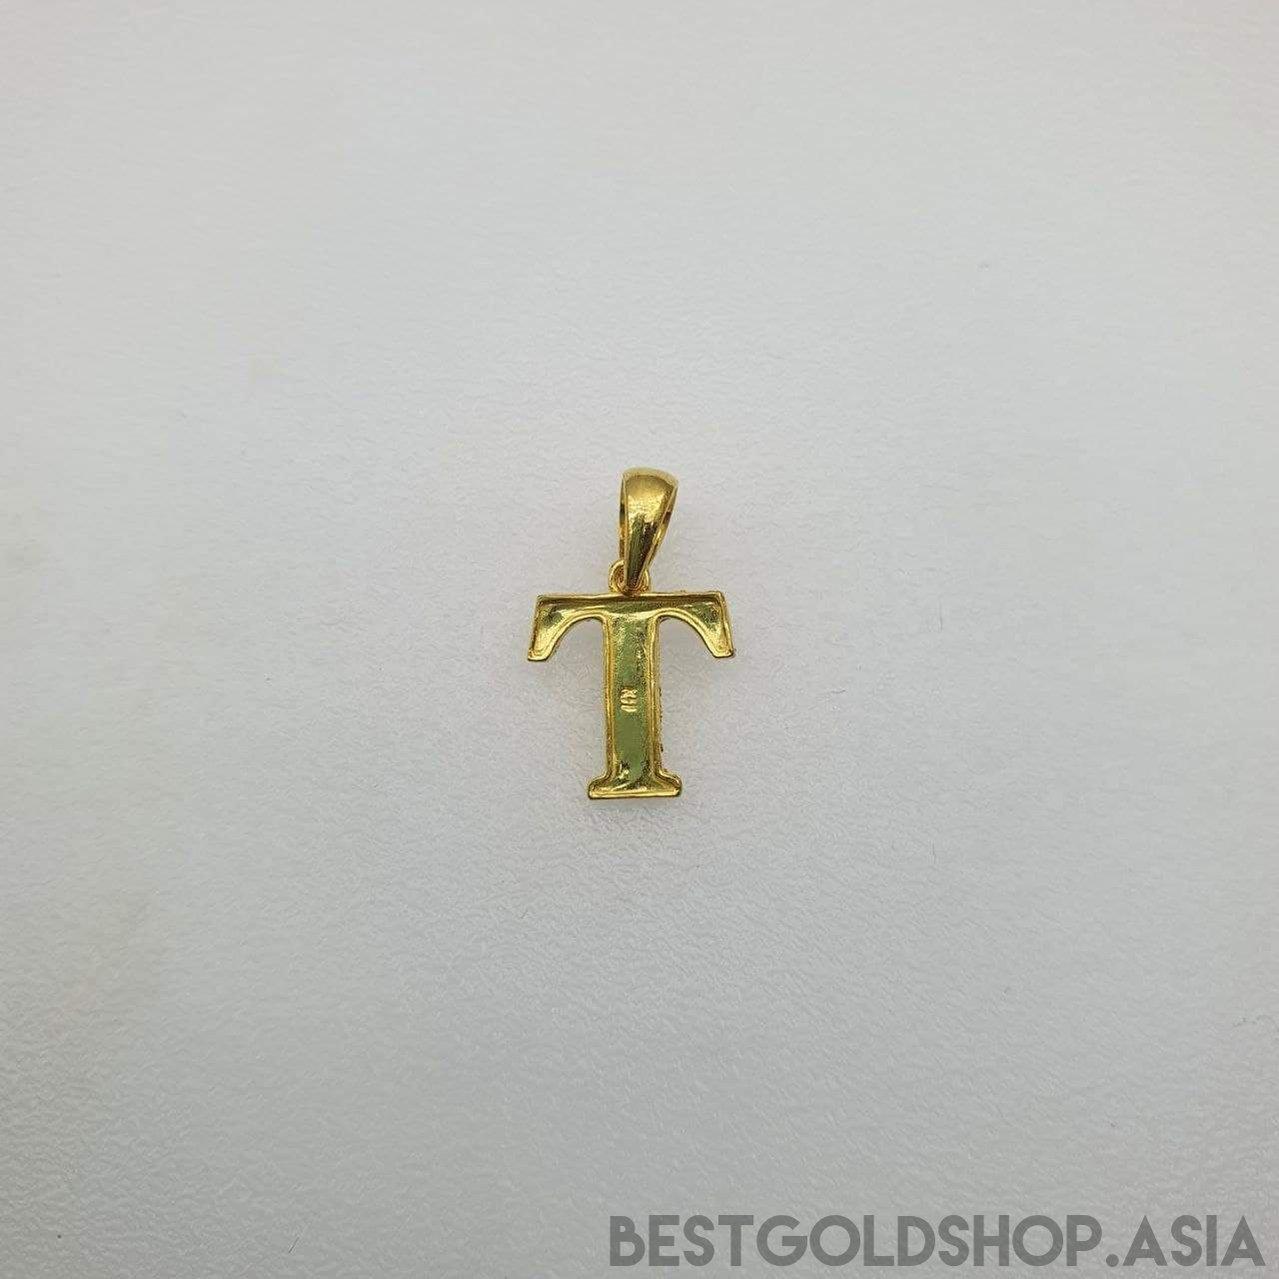 22k / 916 Gold Alphabet Pendant V4-916 gold-Best Gold Shop